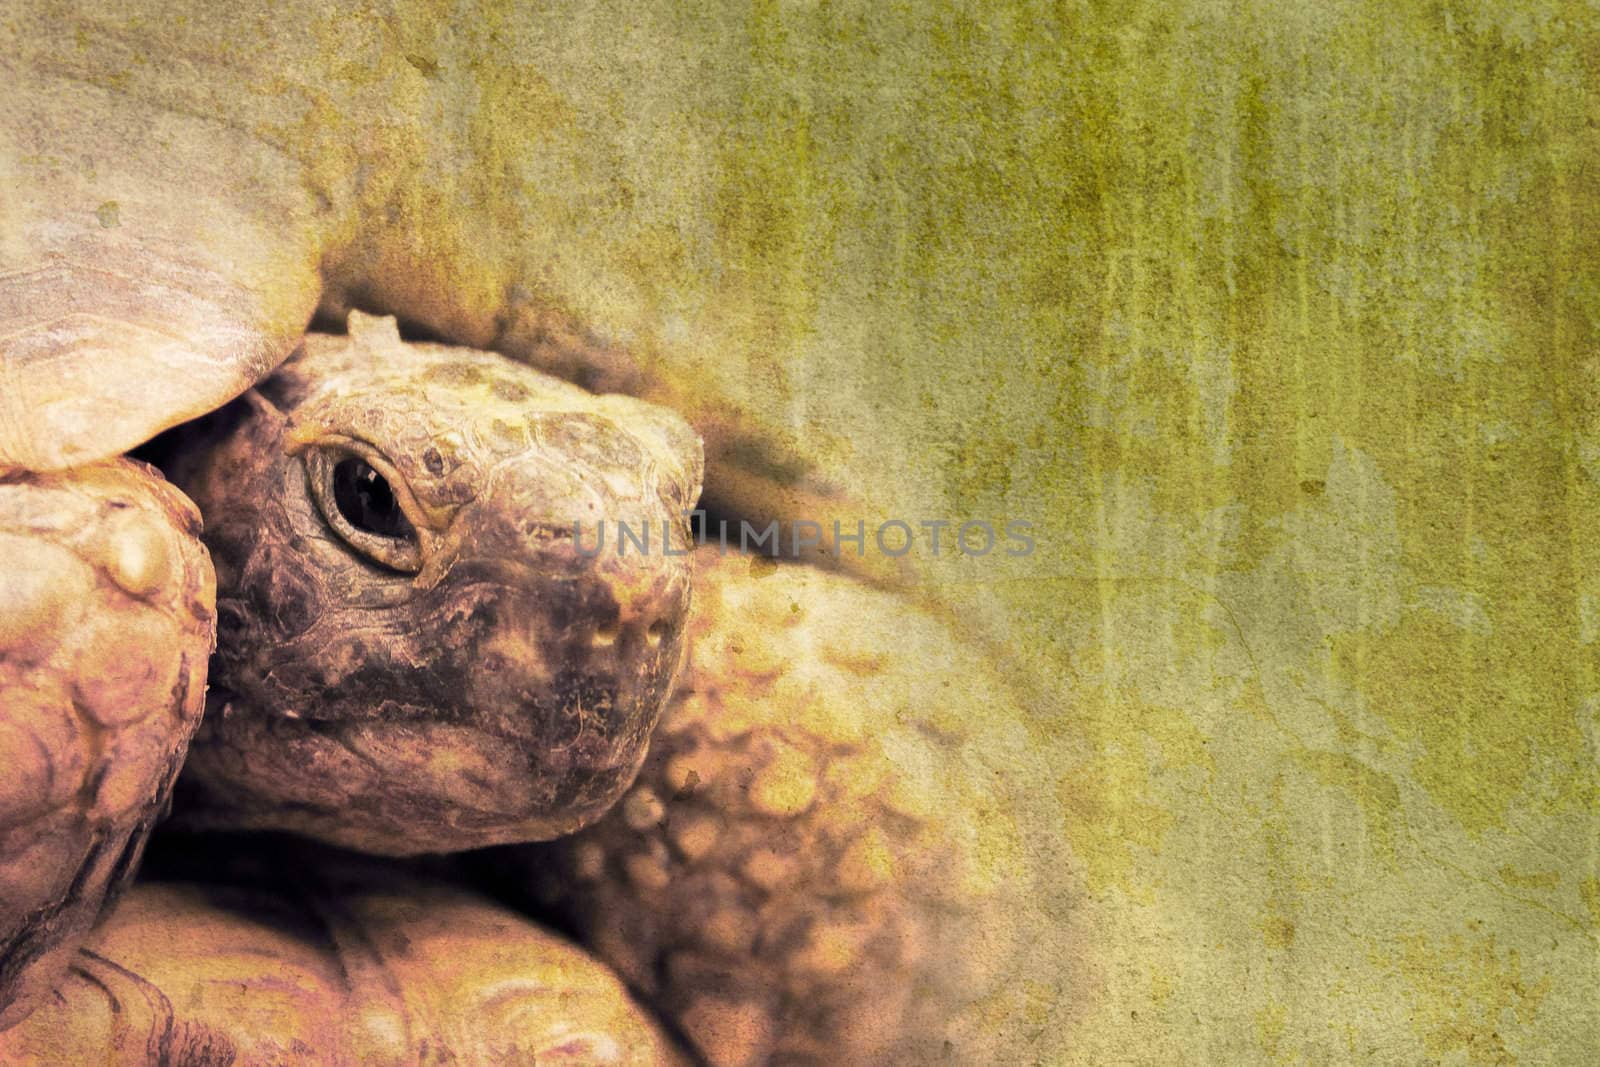 turtle by chrisroll